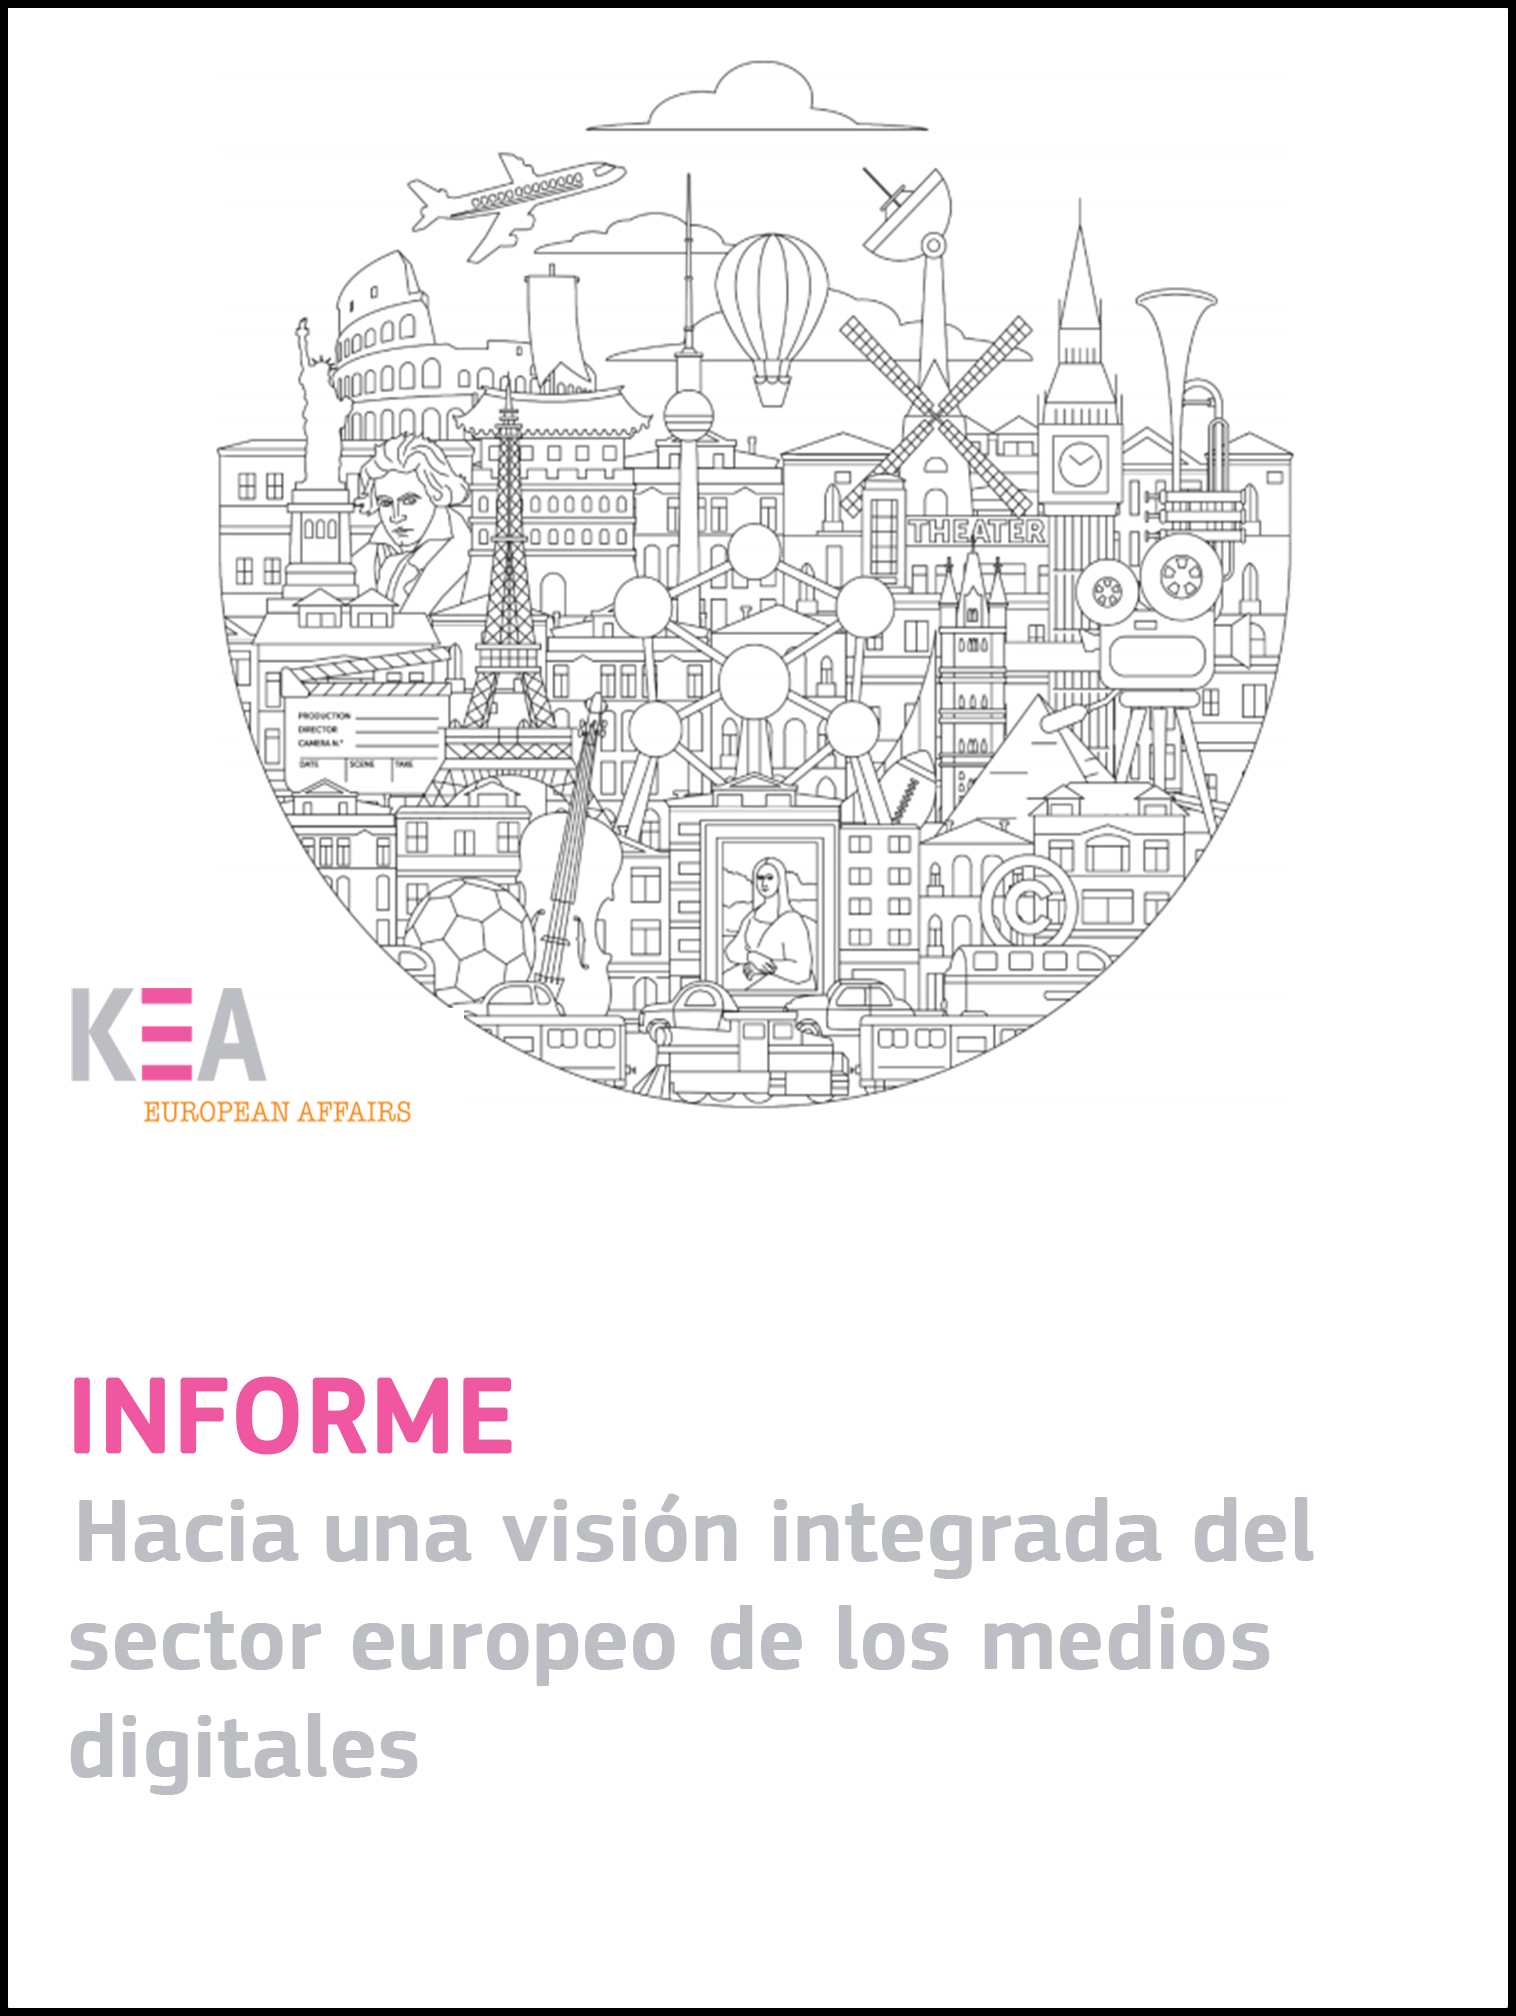 Informe KEA interior def